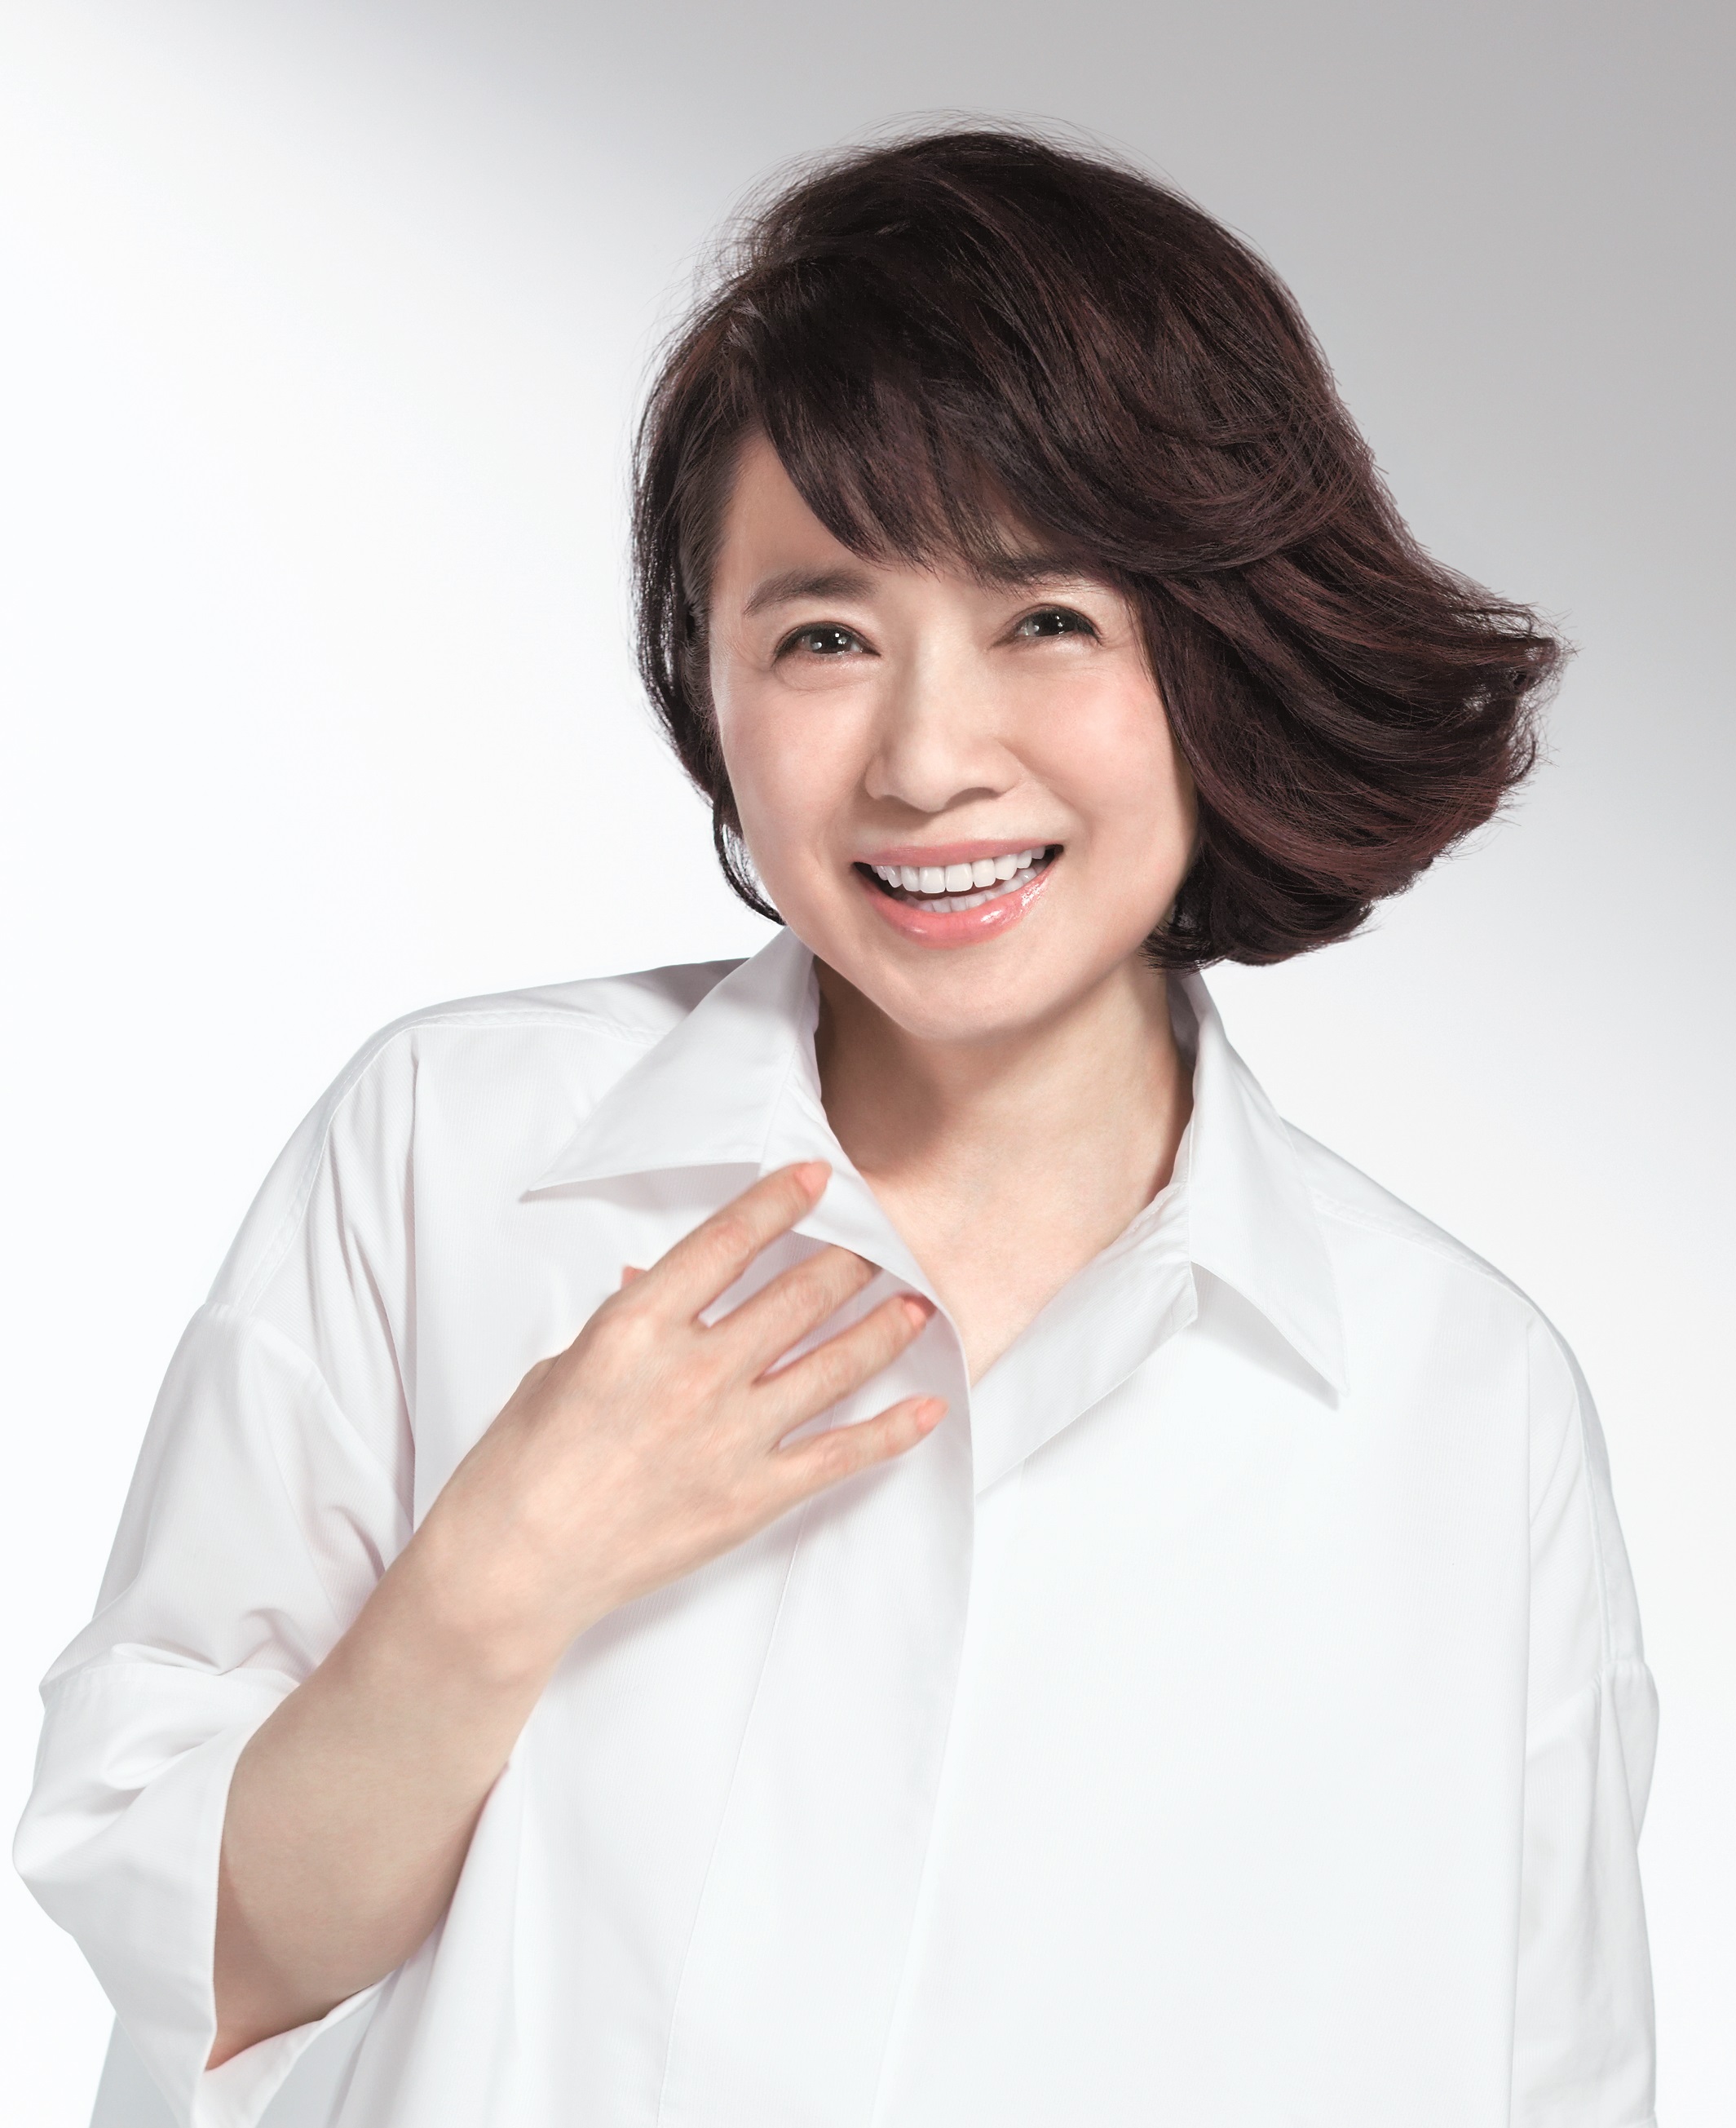 レディースアートネイチャー 広告キャラクターに女優の風吹ジュンさんを起用 アートネイチャーのプレスリリース